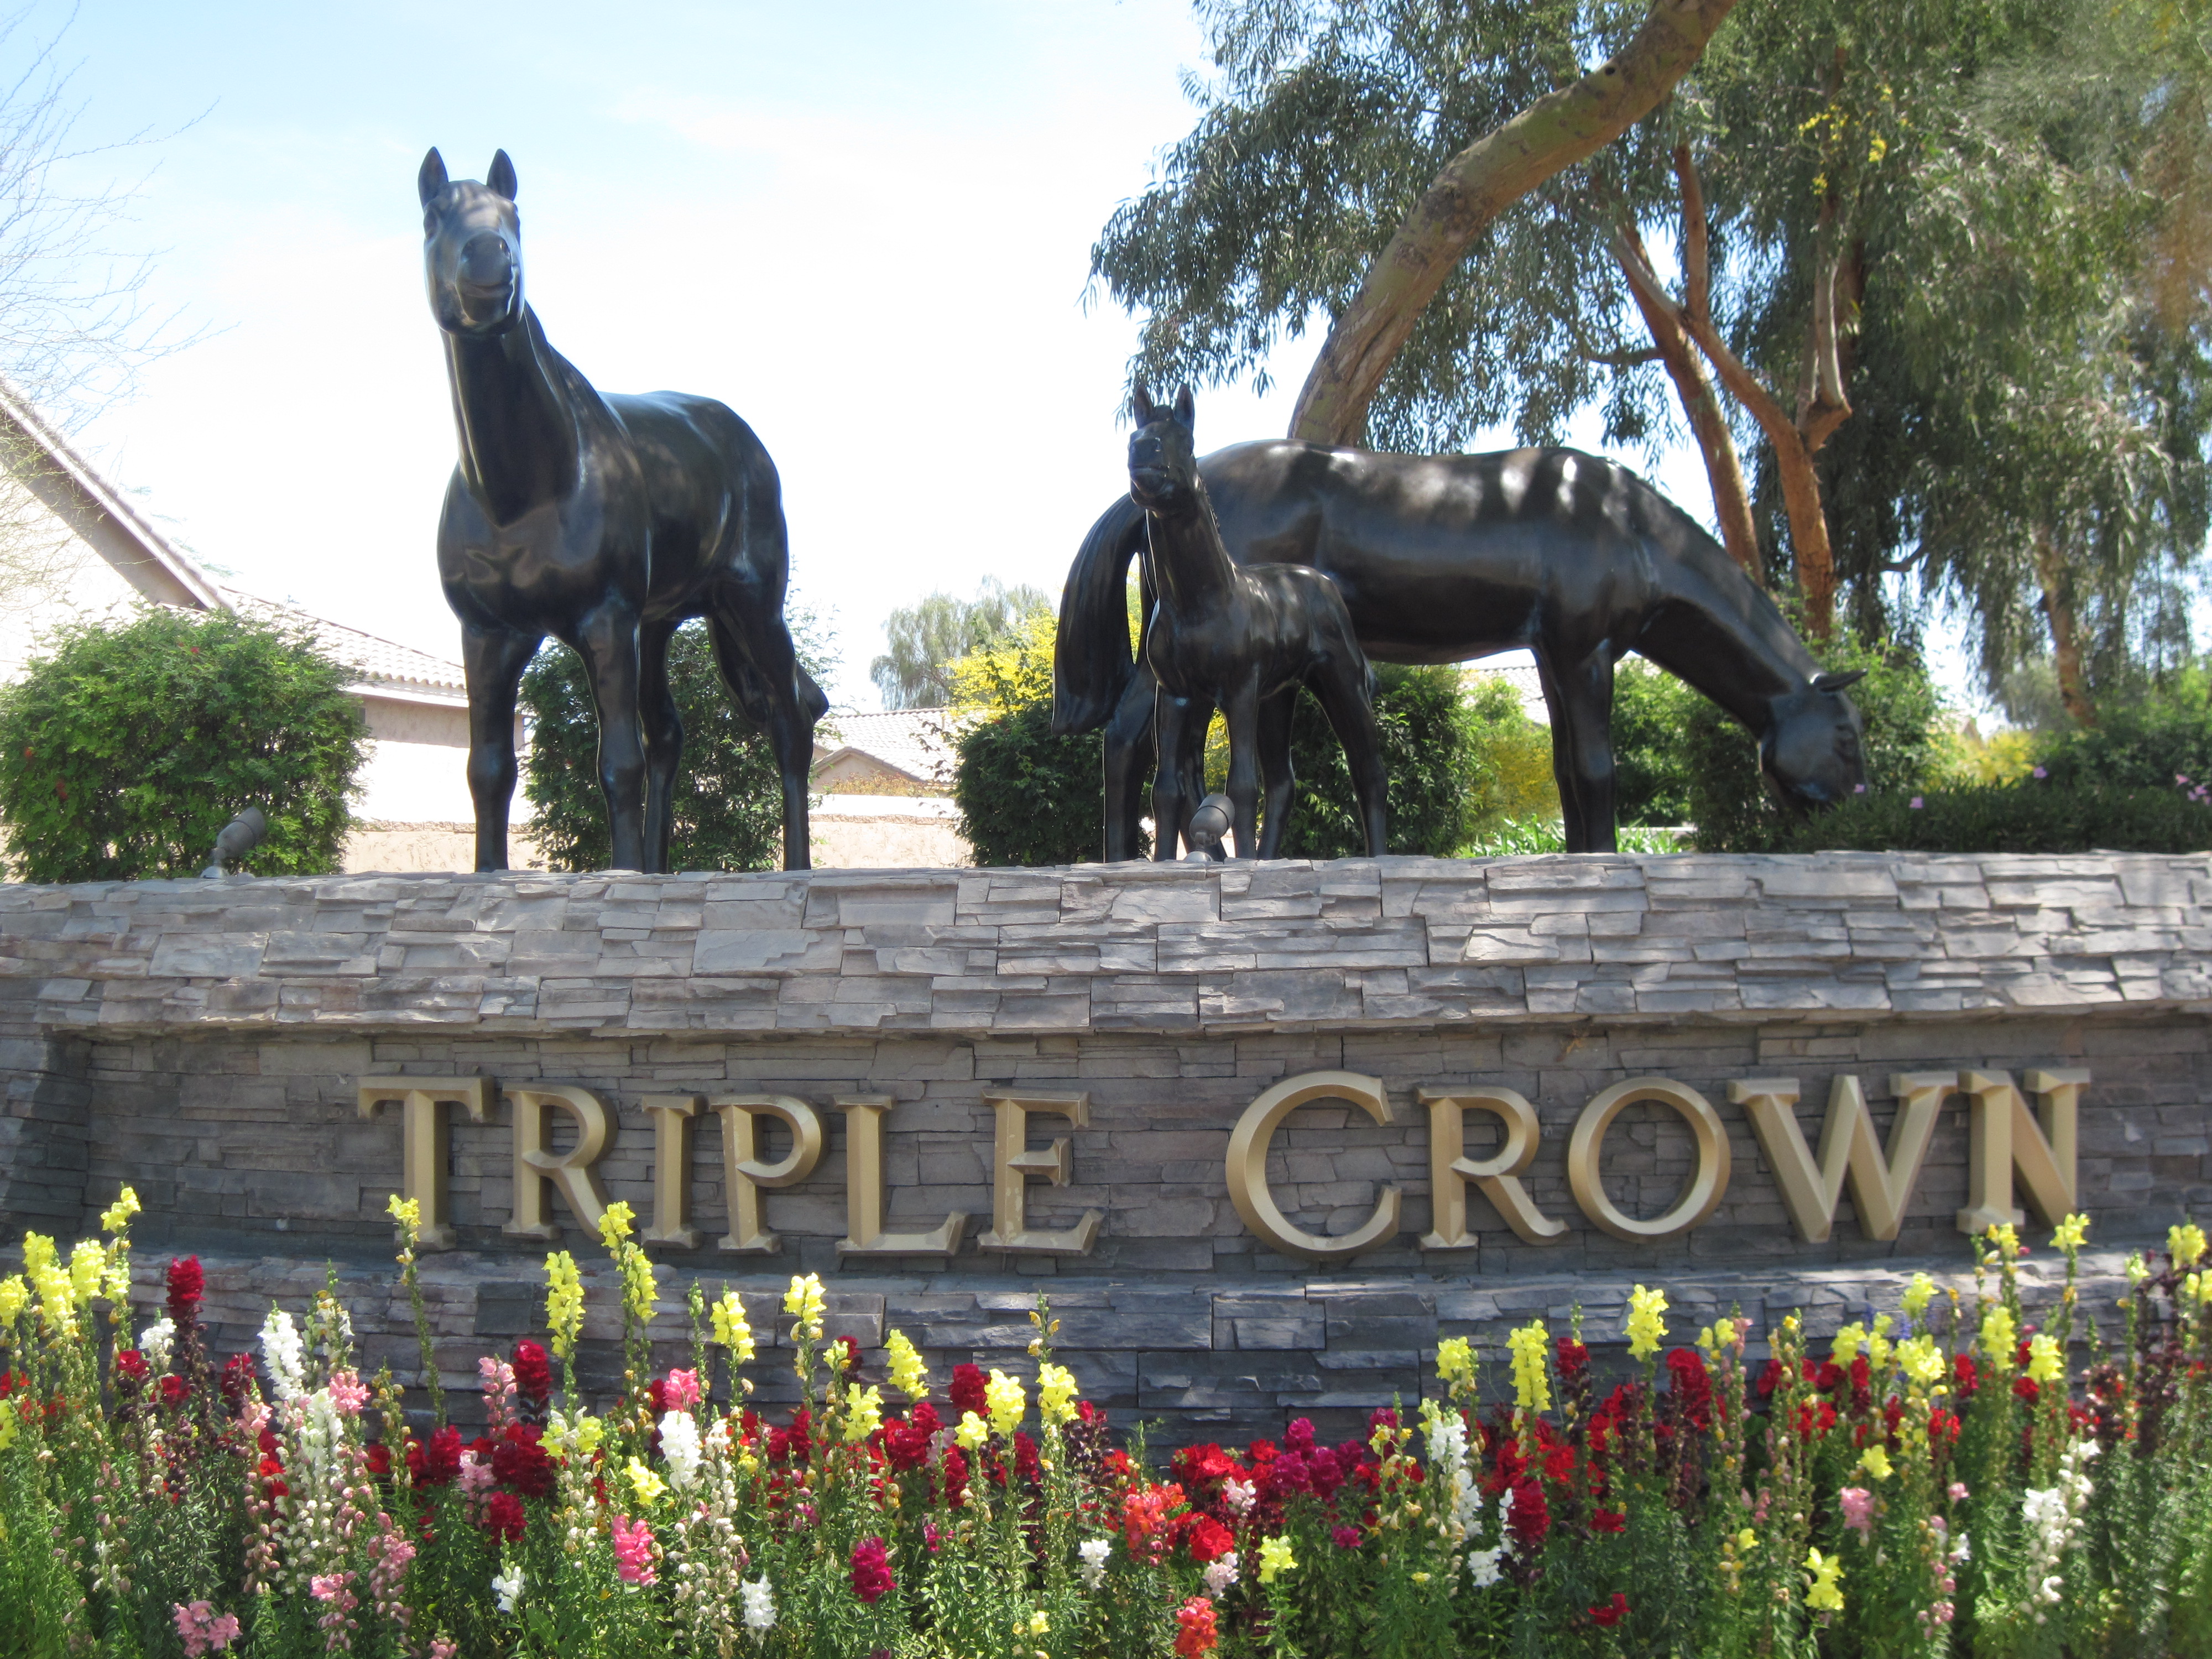 Triple Crown in Scottsdale, AZ